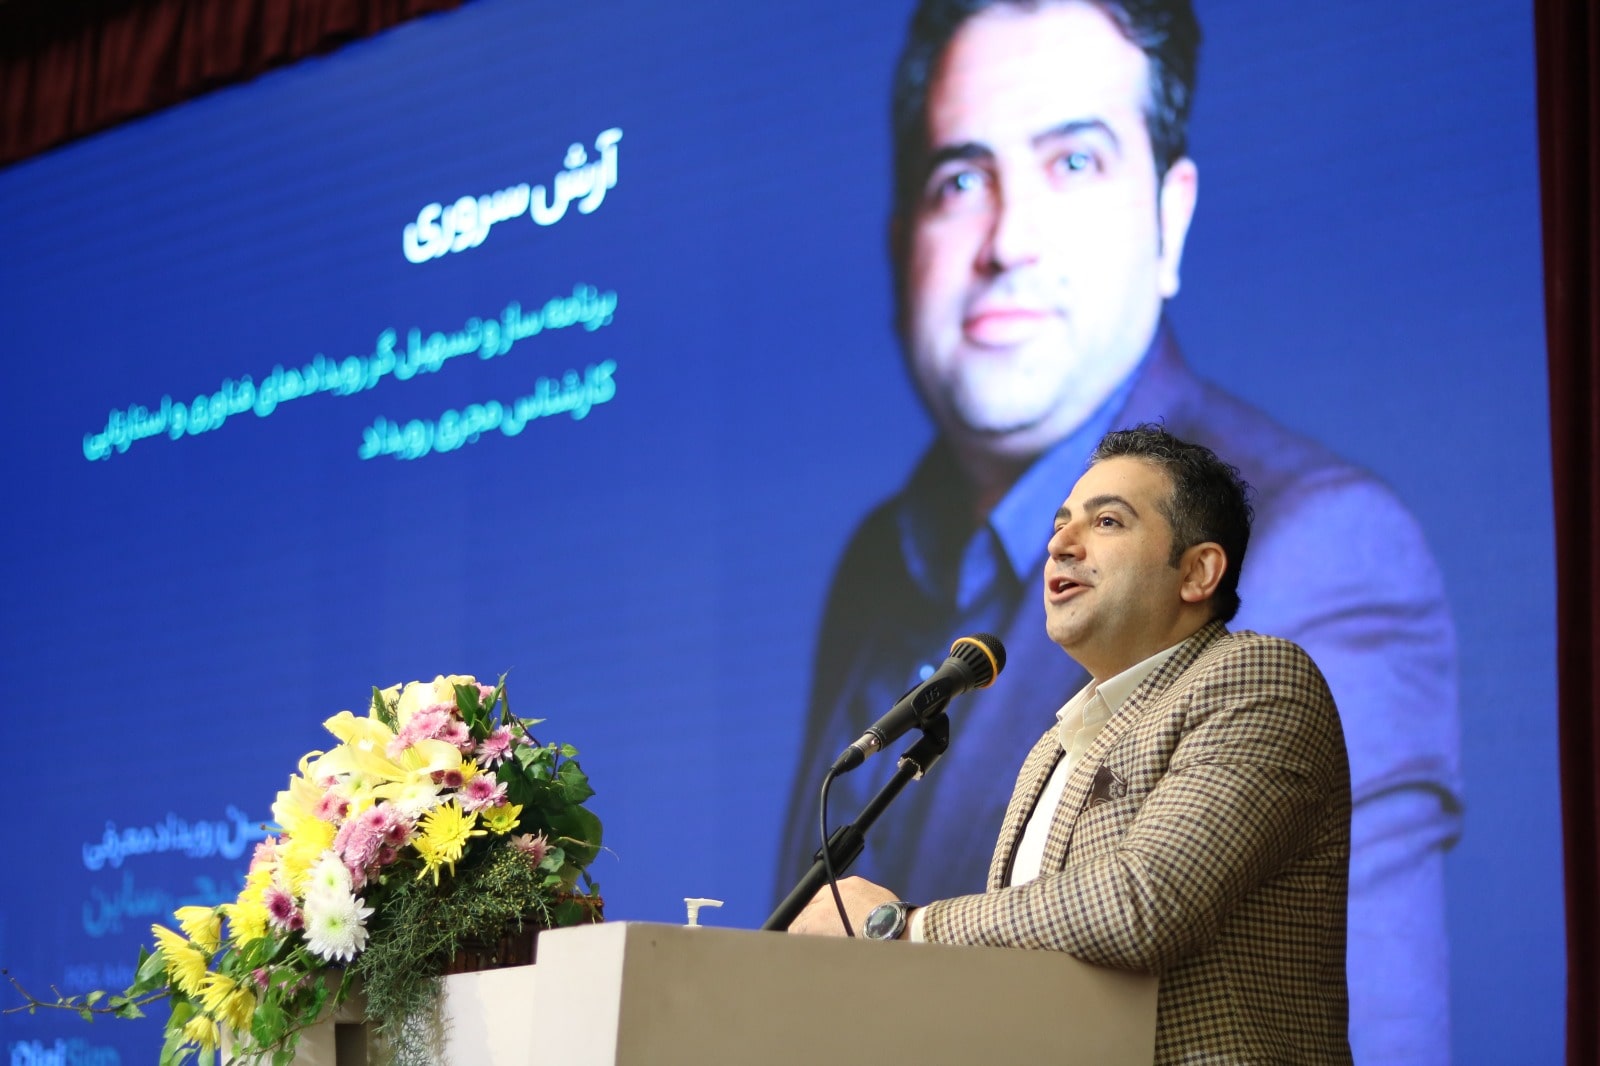 آرش سروری - برگزاری اولین رویداد معرفی پلتفرم یکپارچه دیجی ساین در تهران